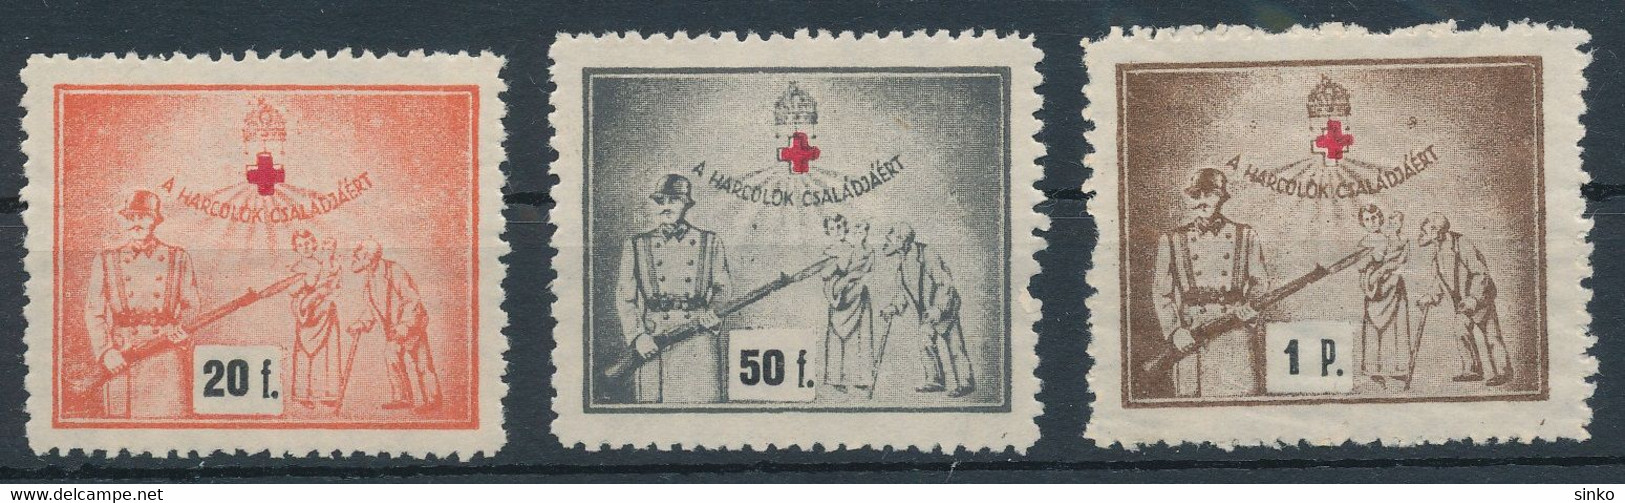 1940s Aid Stamps - Foglietto Ricordo